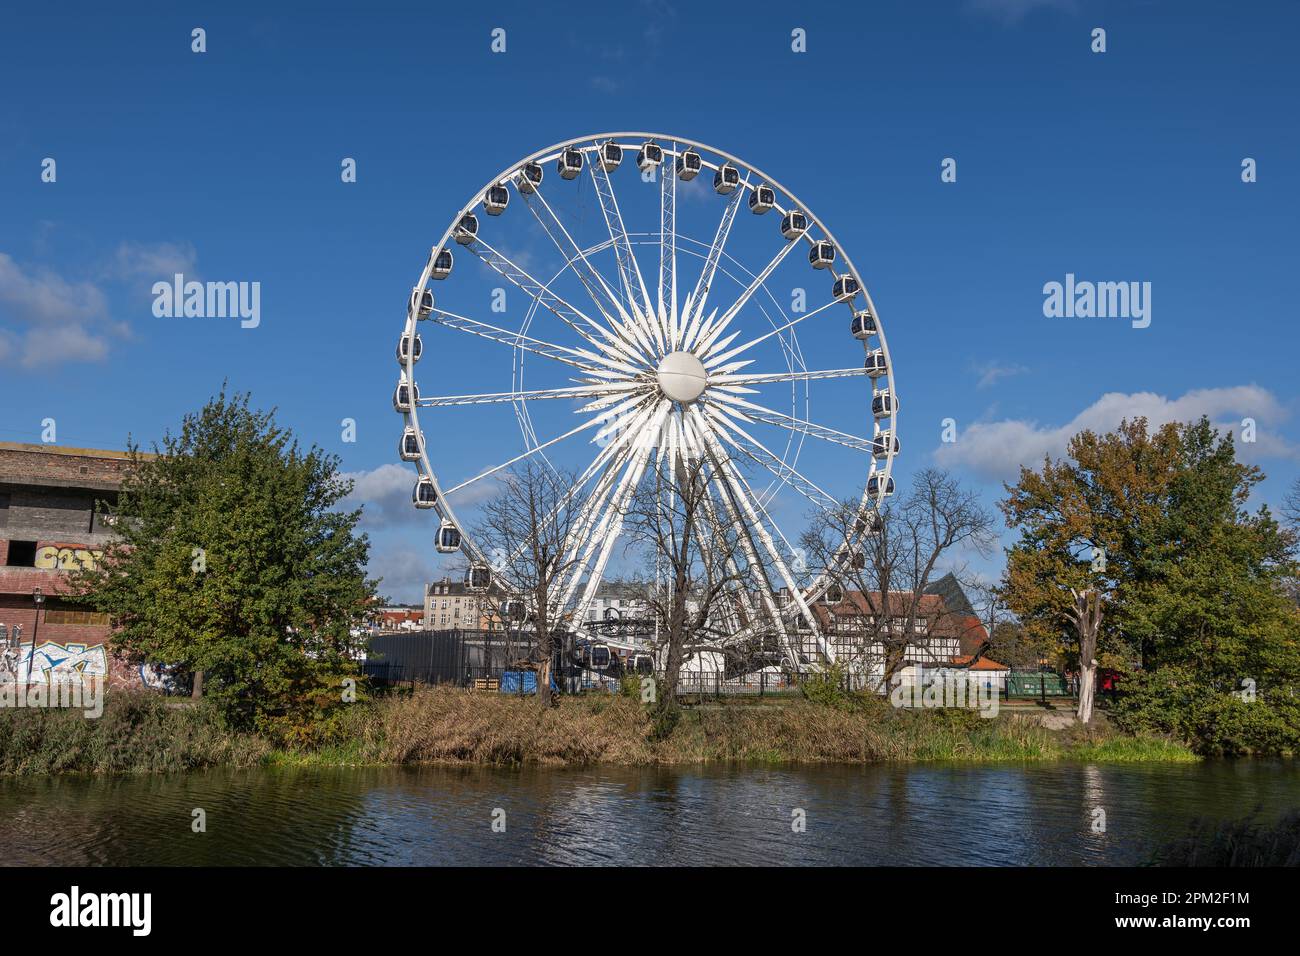 Danzig, Polen - 11. Oktober 2022 - AmberSky Riesenrad, 50 Meter hoher Bau mit 36 Gondeln, wichtige Touristenattraktion und Wahrzeichen der Stadt. Stockfoto